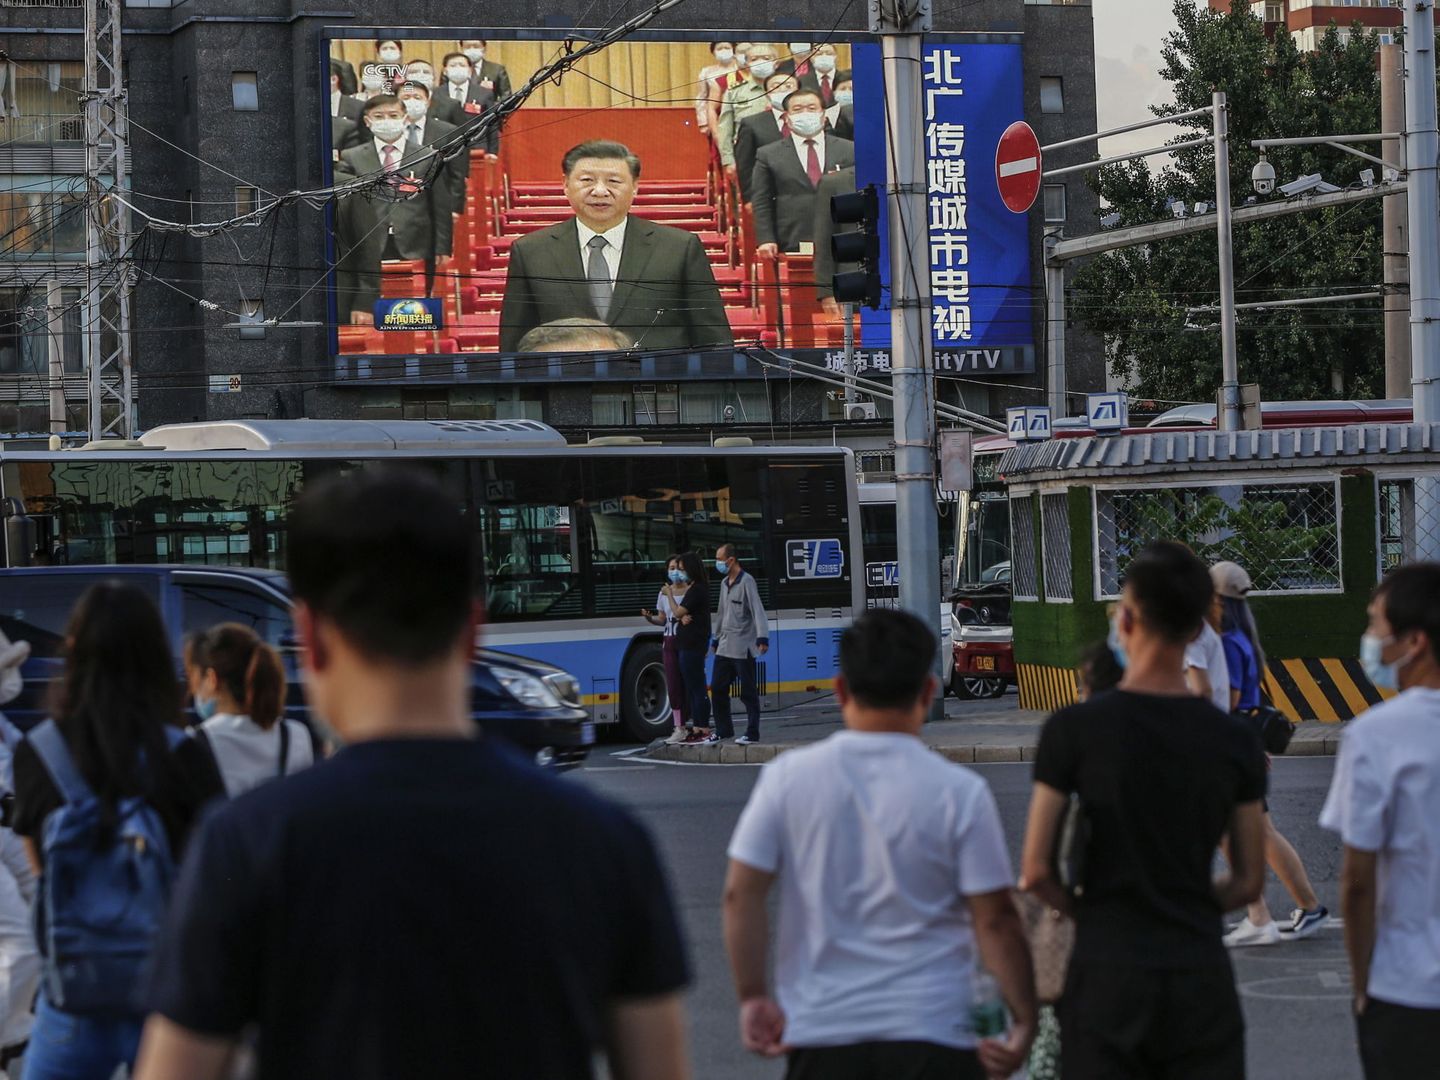 Un grupo de personas mira unas pantallas con un discurso del presidente Xi Jinping. (Reuters)